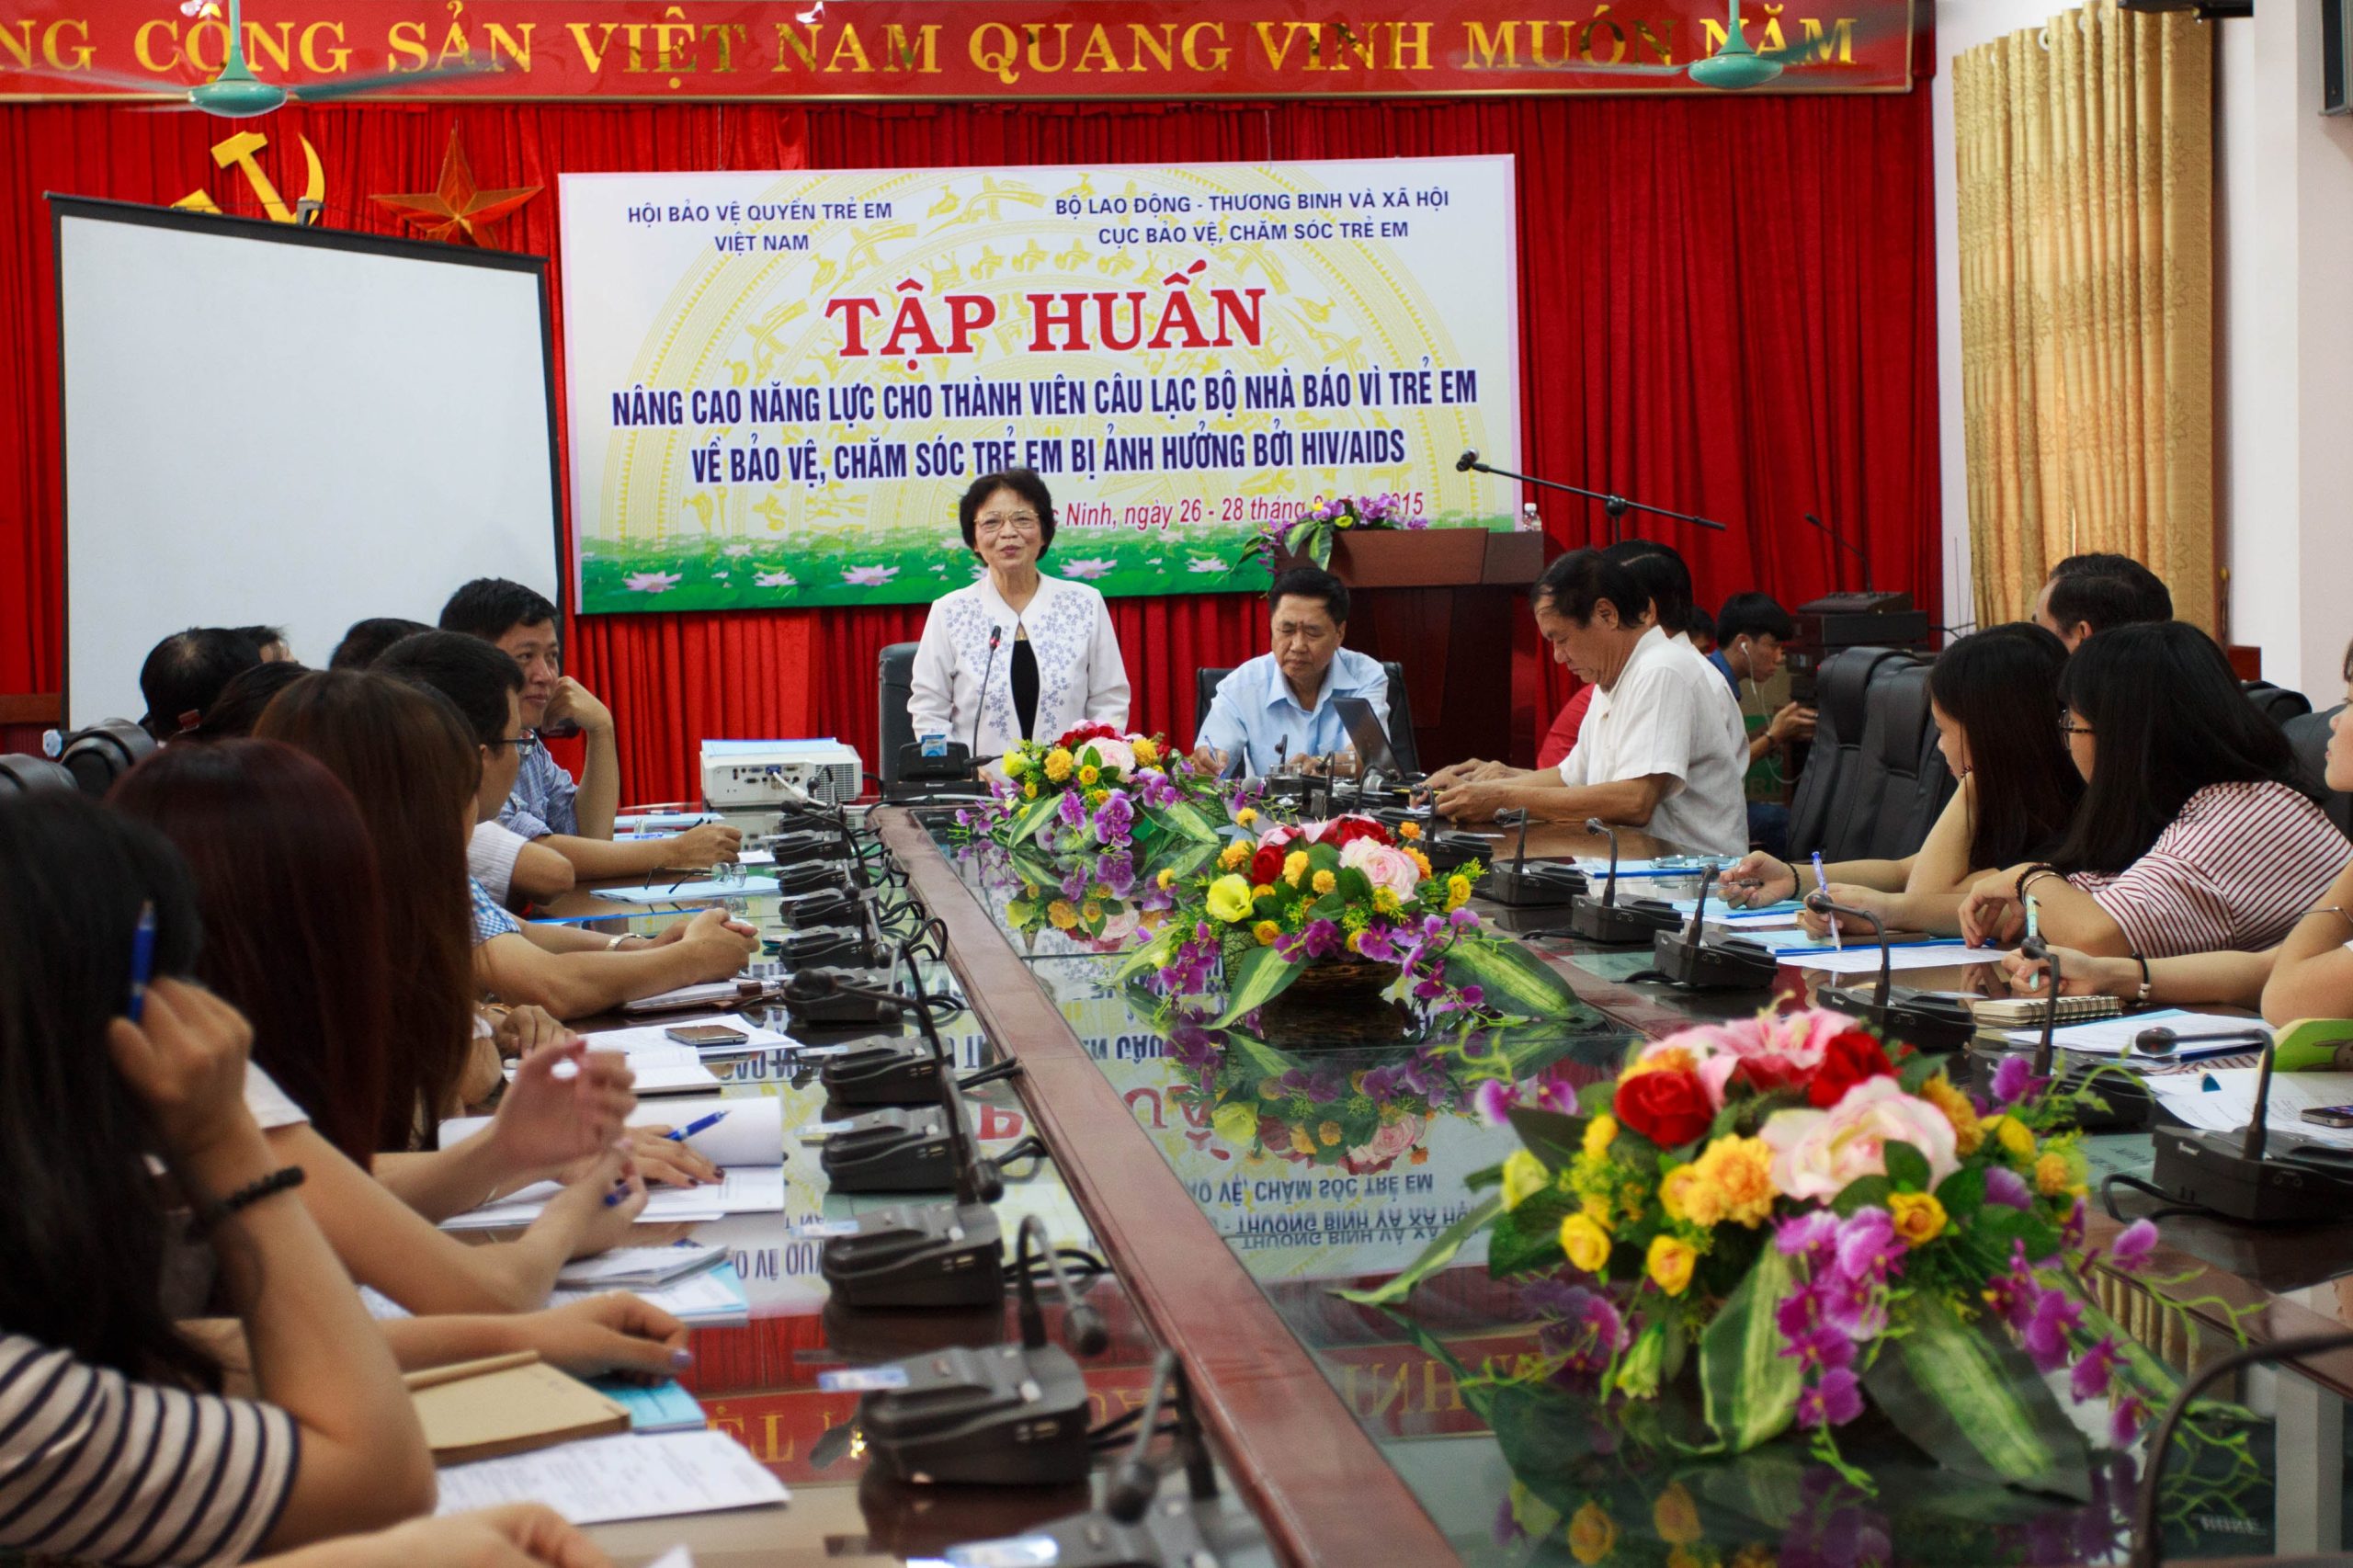 Chủ tịch Trần Thị Thanh Thanh phát biểu tại Tập huấn nâng cao năng lực cho thành viên Câu lạc bộ Nhà báo vì trẻ em tại Bắc Ninh năm 2015.